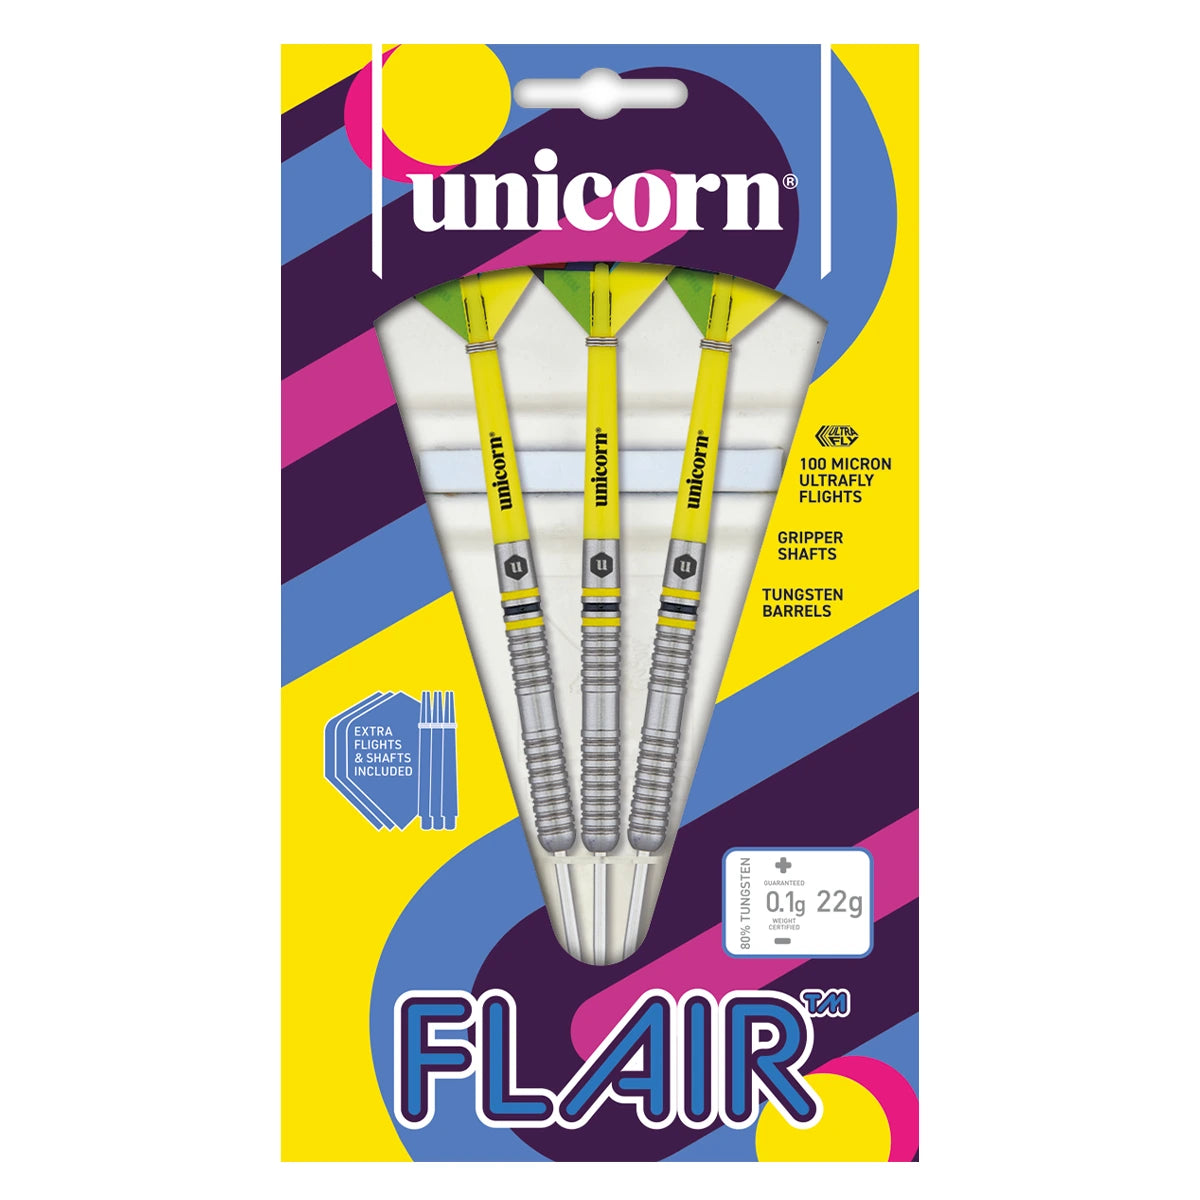 Unicorn Flair 80% Tungsten 22g Darts